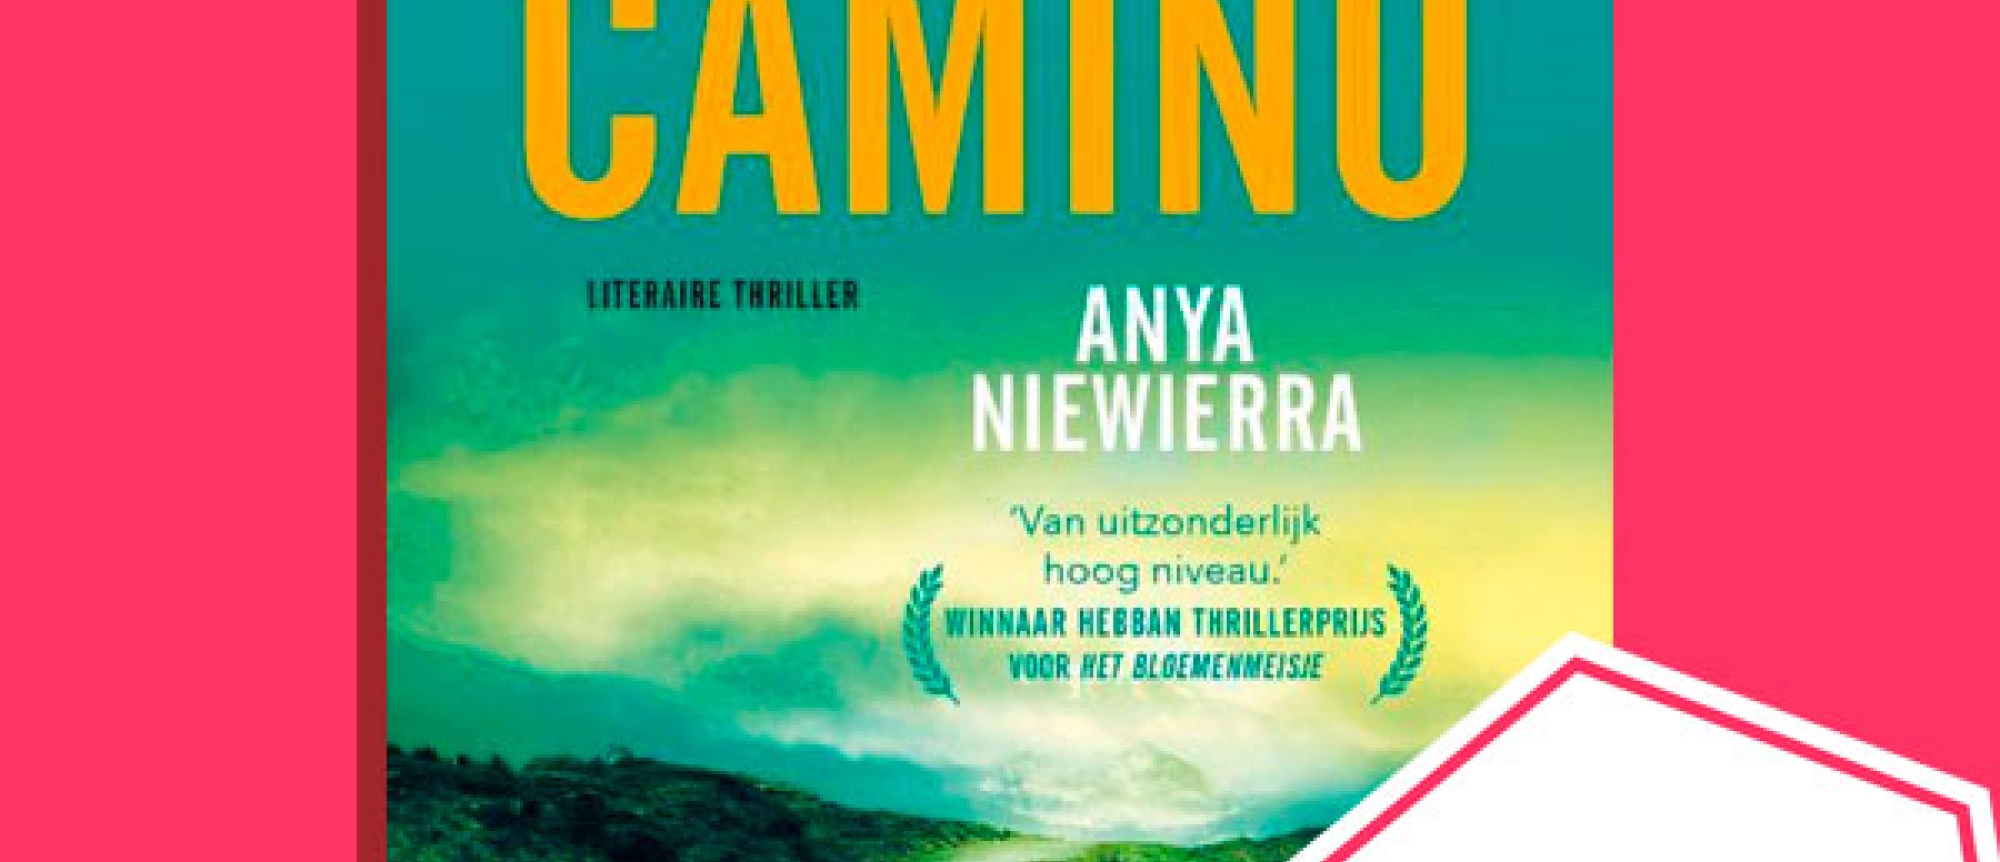 Anya Niewierra wint met 'De Camino' de Hebban Thrillerprijs 2022